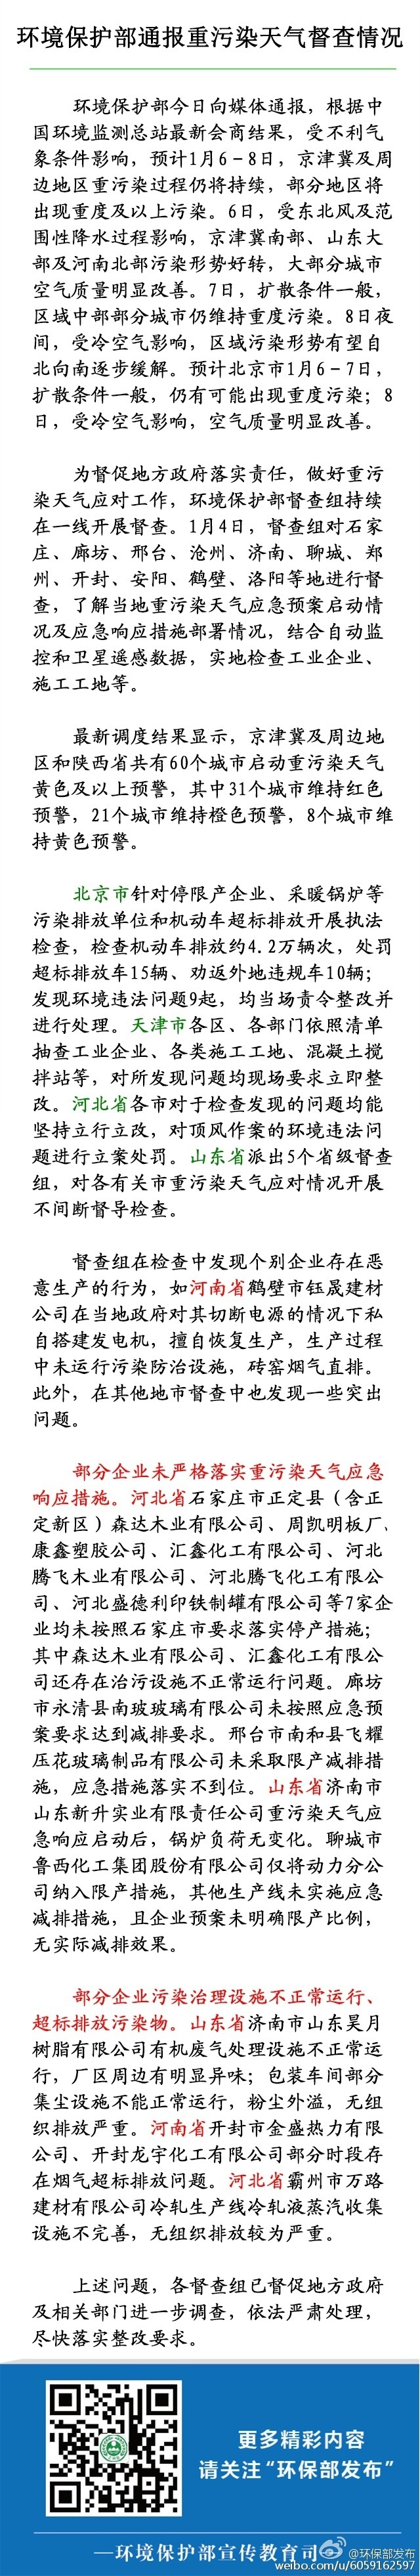 环保部:京津冀重污染天气持续 31城维持红色预警